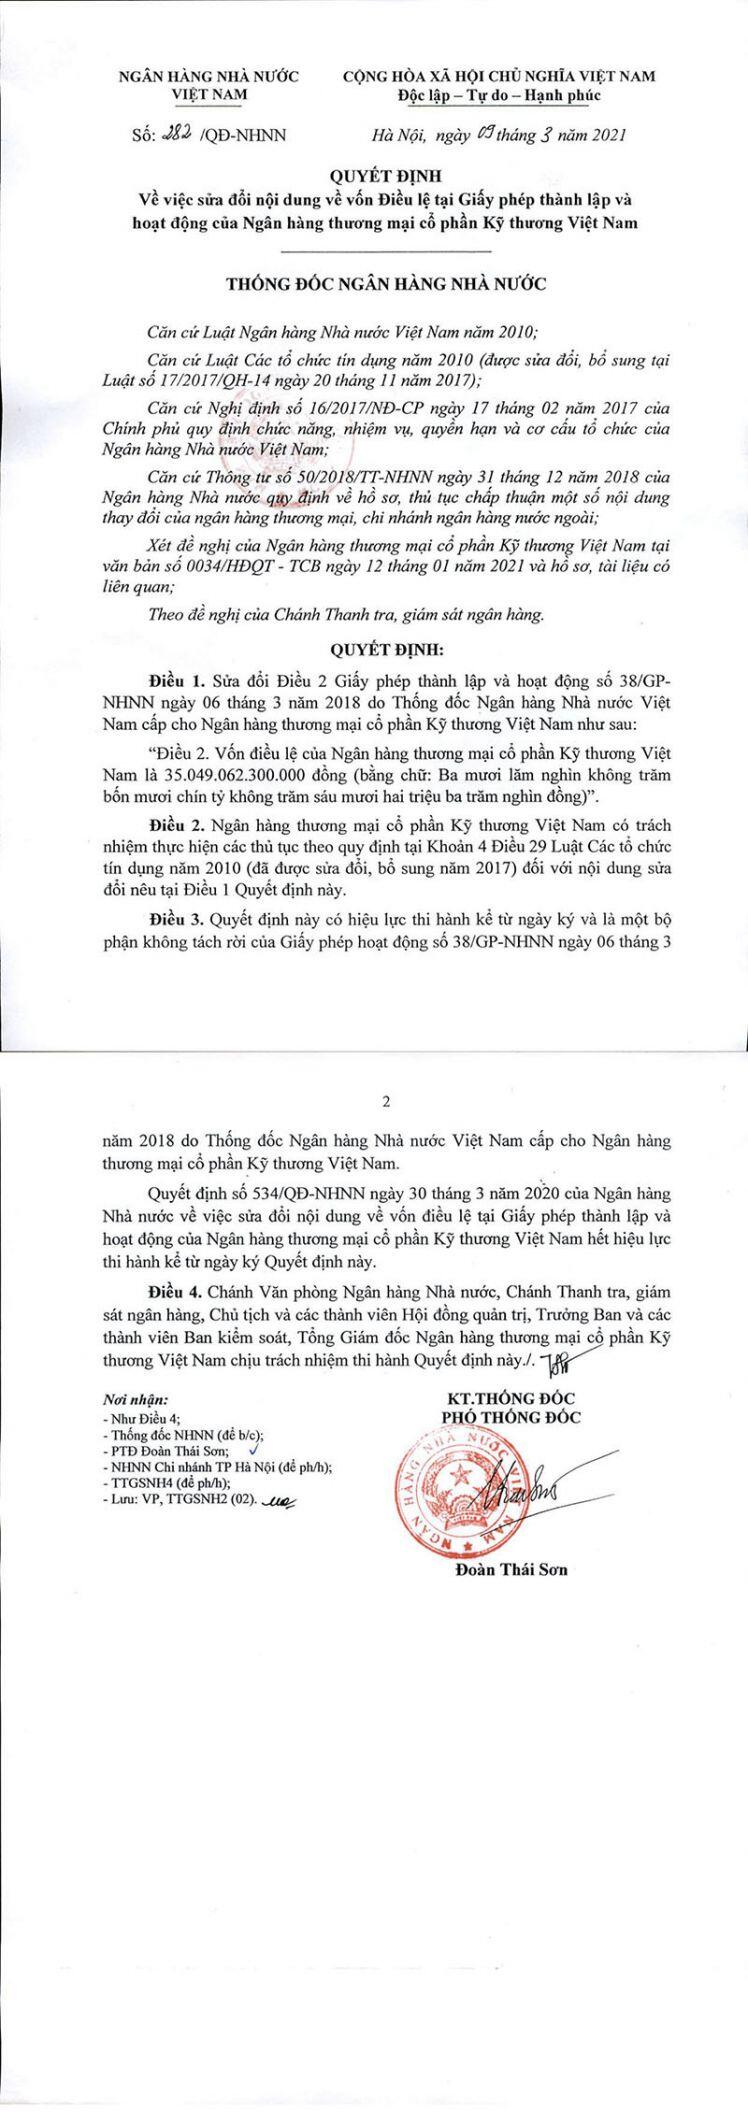 Ngân hàng TMCP Kỹ thương Việt Nam thông báo về việc sửa đổi vốn điều lệ trên giấy phép